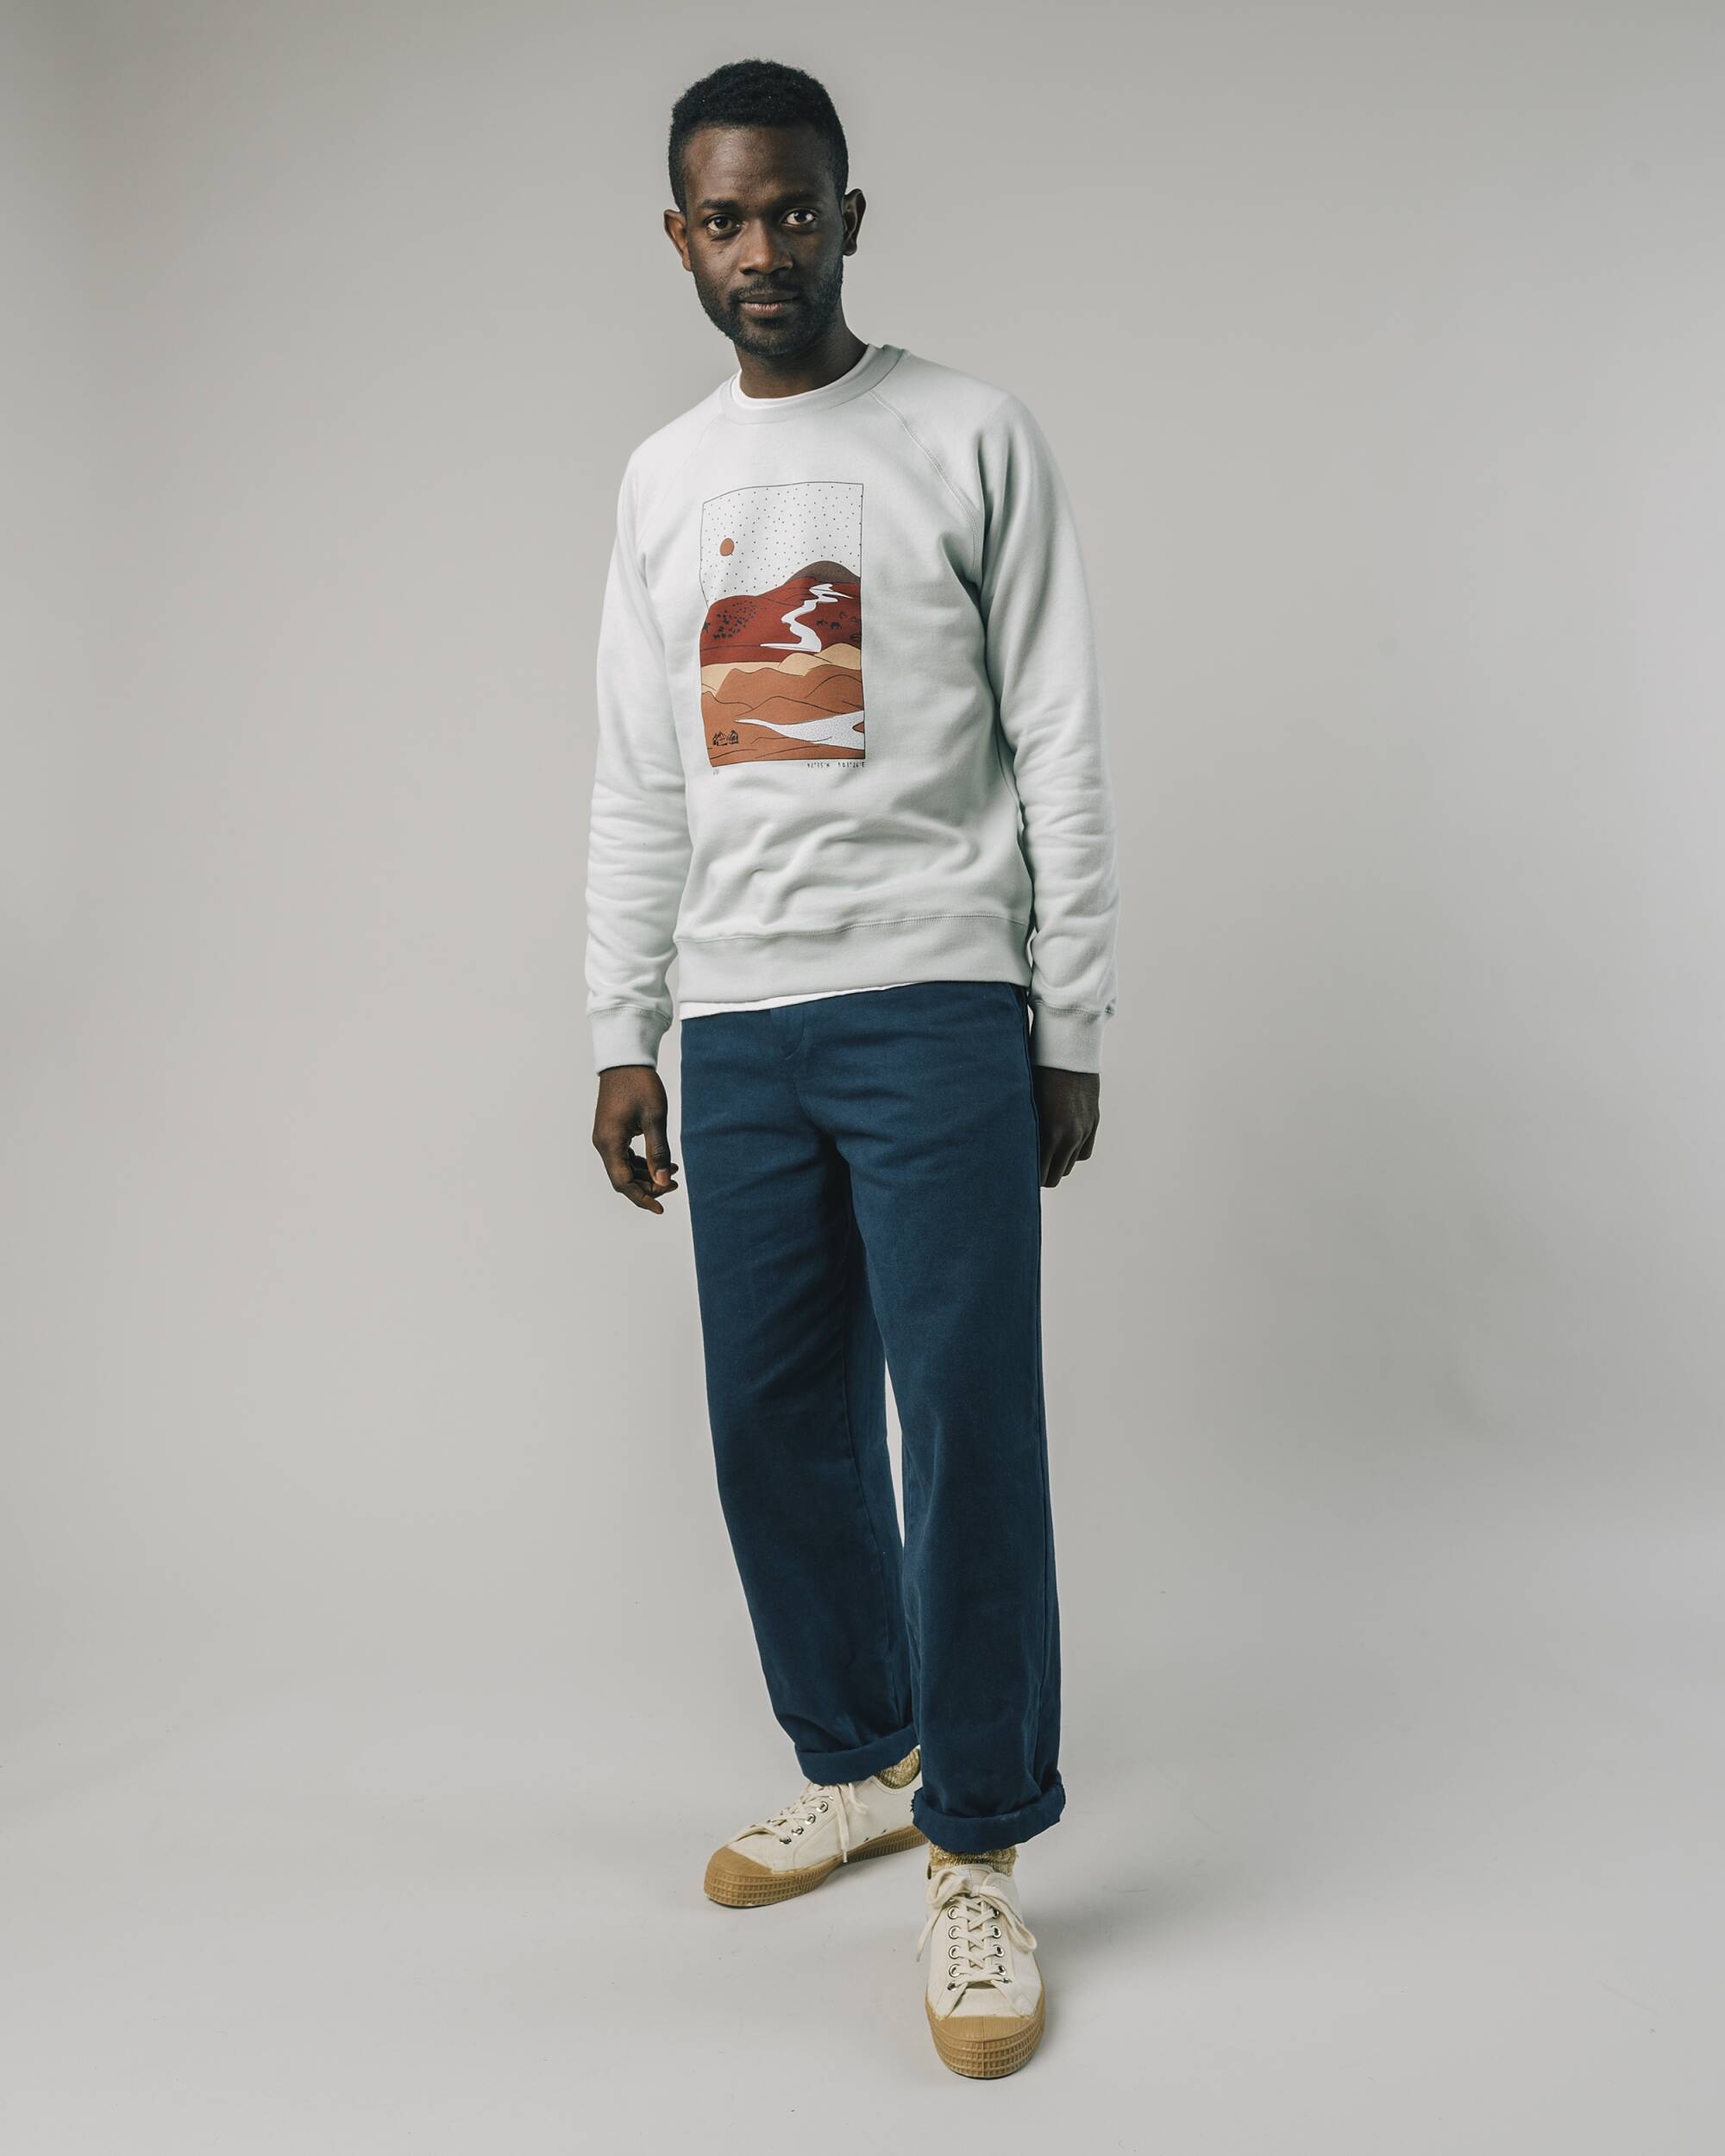 Sweatshirt "Gobi" in weiss aus 100% Bio - Baumwolle von Brava Fabrics